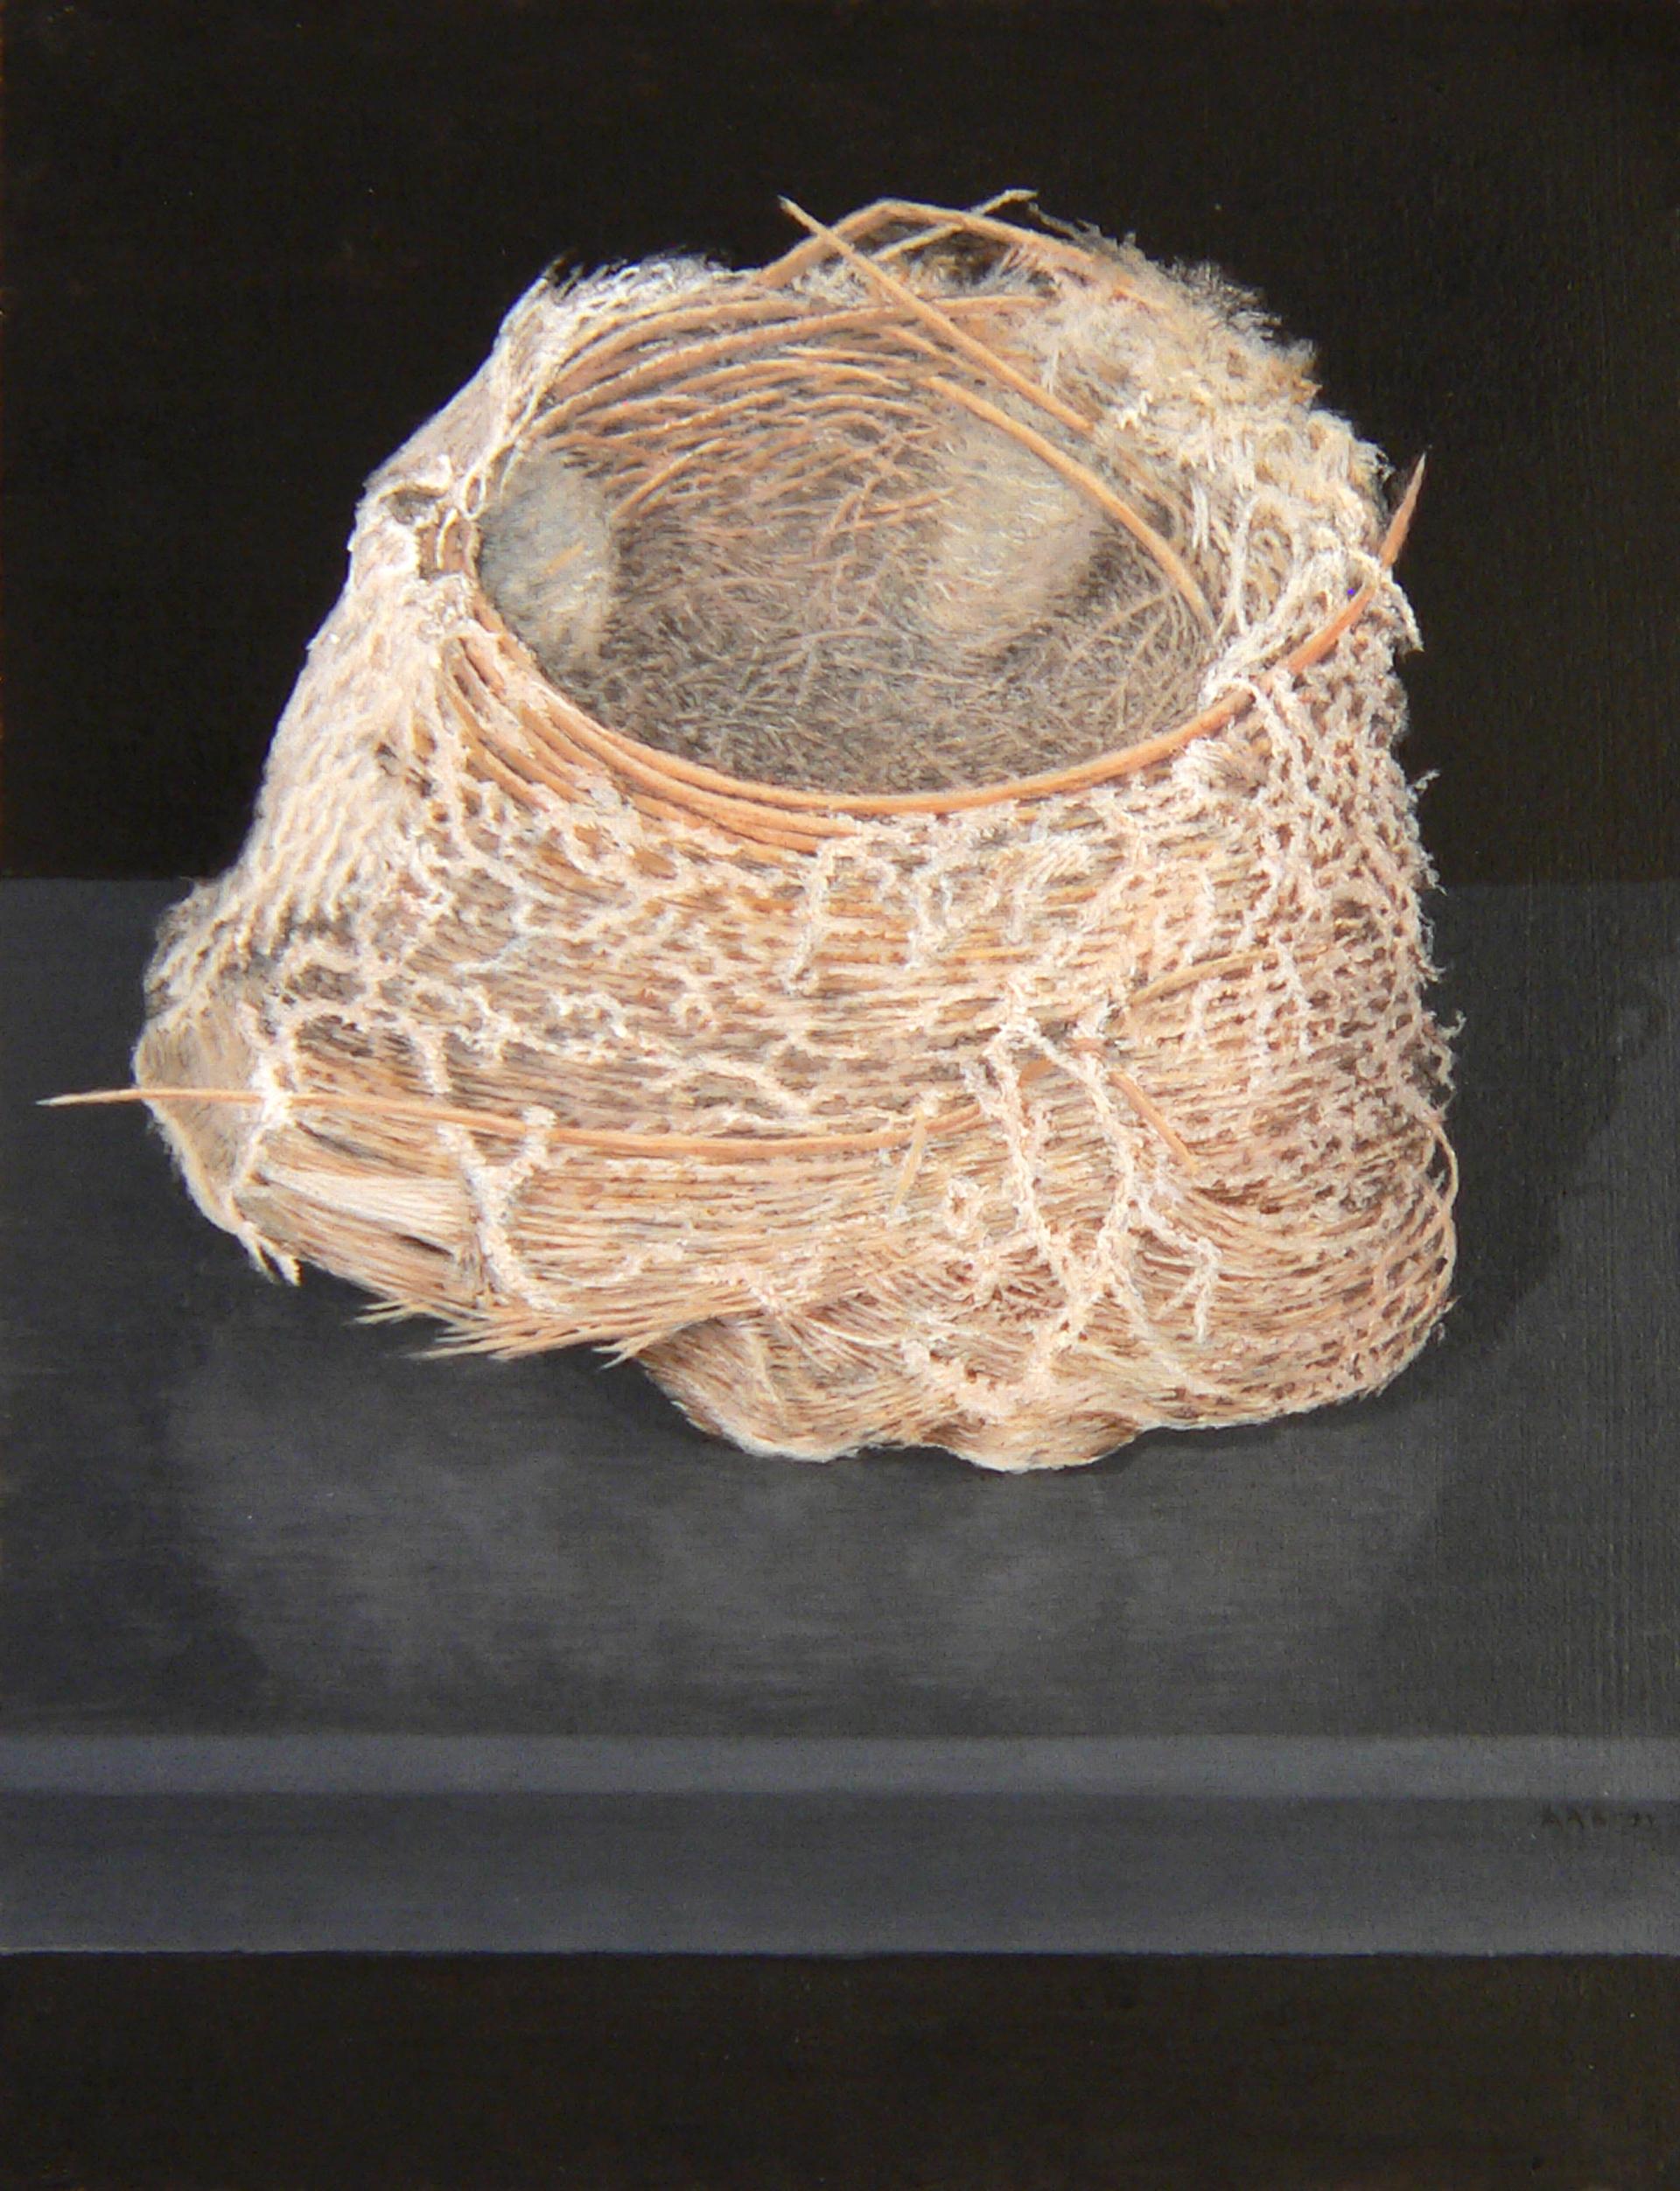 La dernière peinture d'Alan Bray est une œuvre rare et exotique. Il s'est détourné du monde humain pour se concentrer sur les cieux, capturant un nid d'oiseau vide camouflé parmi les branches et les vagues brisées. Bien que moins clandestin vu d'en